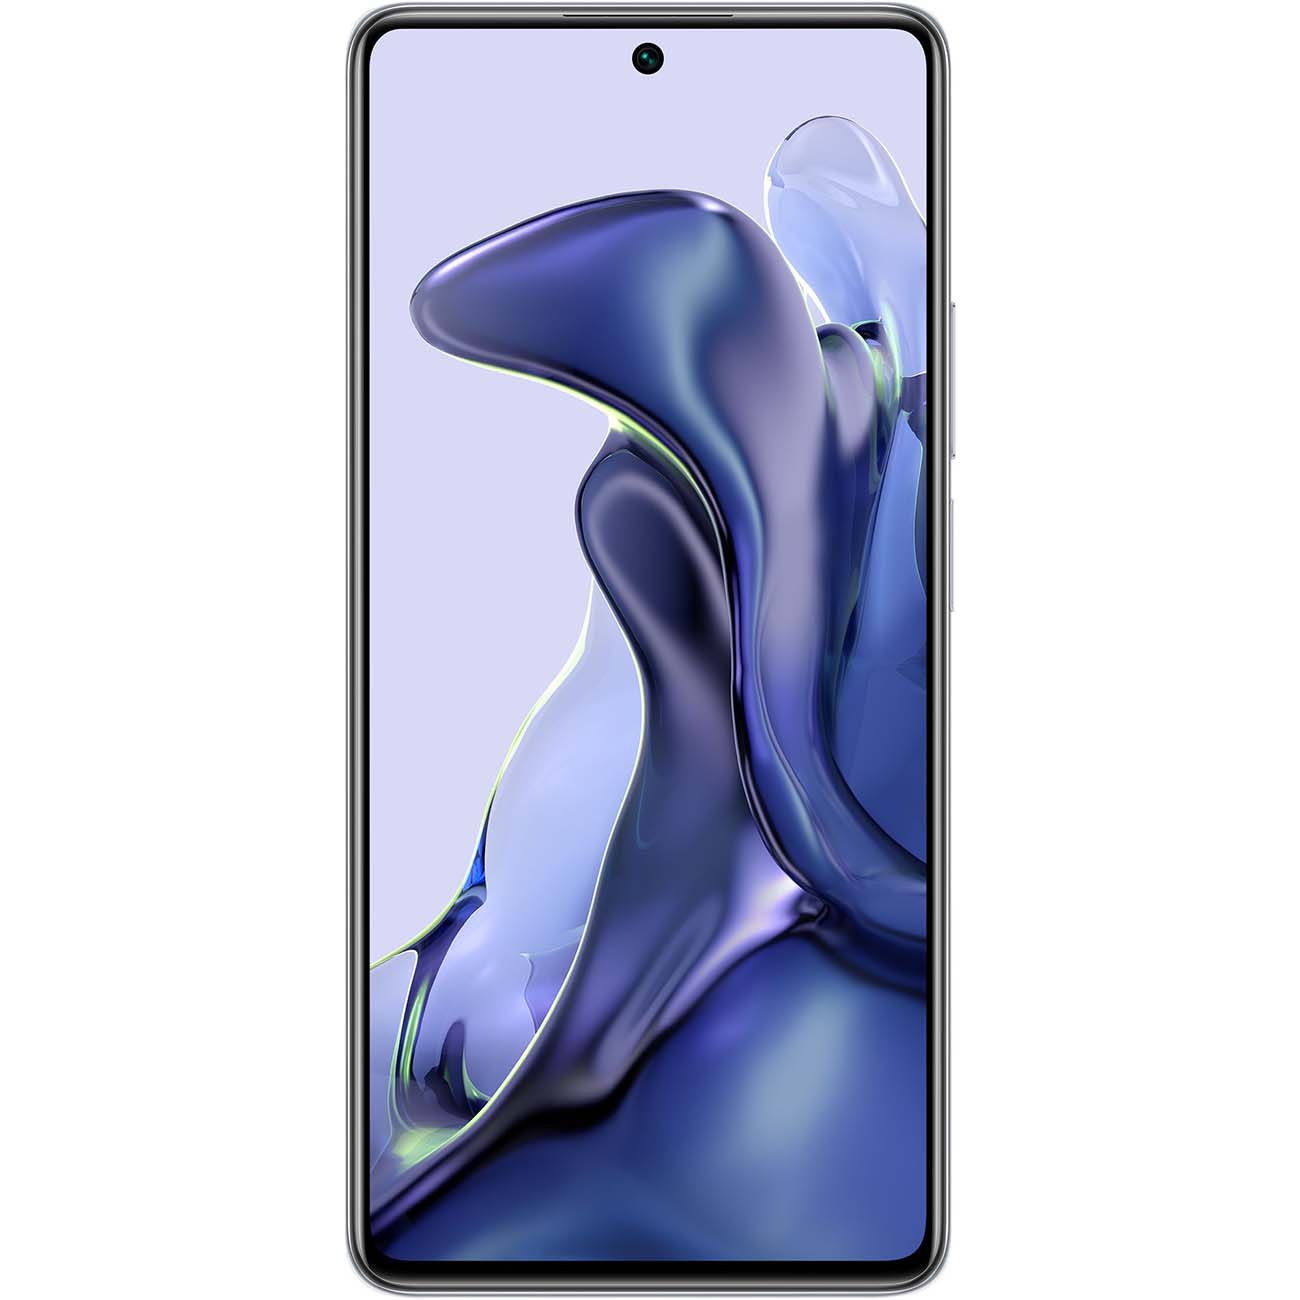 Купить смартфон xiaomi 11t 8gb+256gb white Смартфоны в официальном магазине Apple, Samsung, Xiaomi. iPixel.ru Купить, заказ, кредит, рассрочка, отзывы,  характеристики, цена,  фотографии, в подарок.